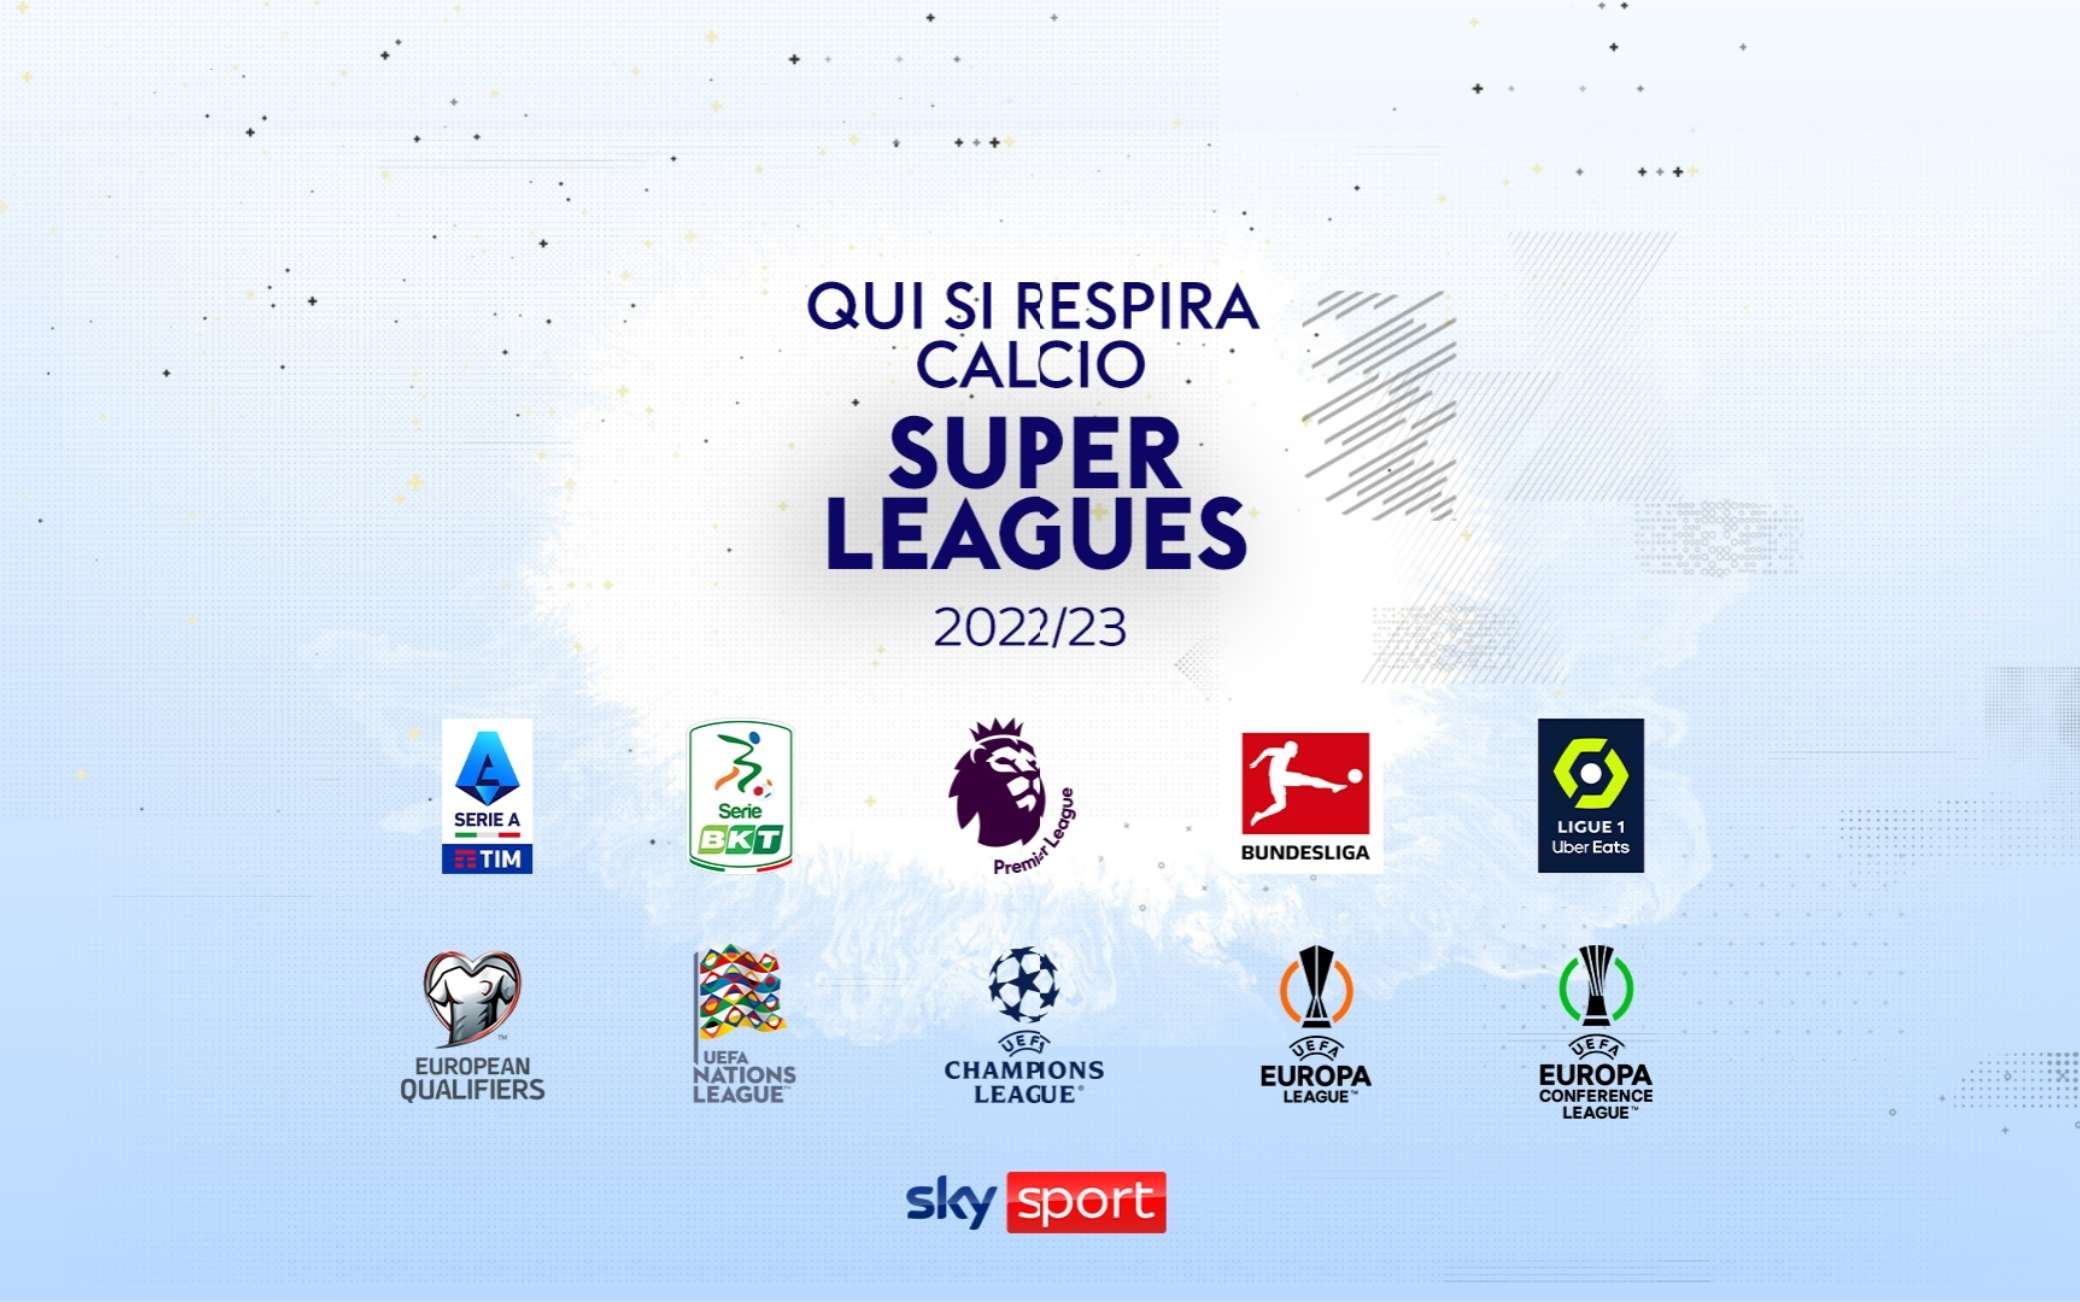 Chiellini entra nella squadra Sky Sport. Tutte le novità della Stagione Calcio 2022 / 2023